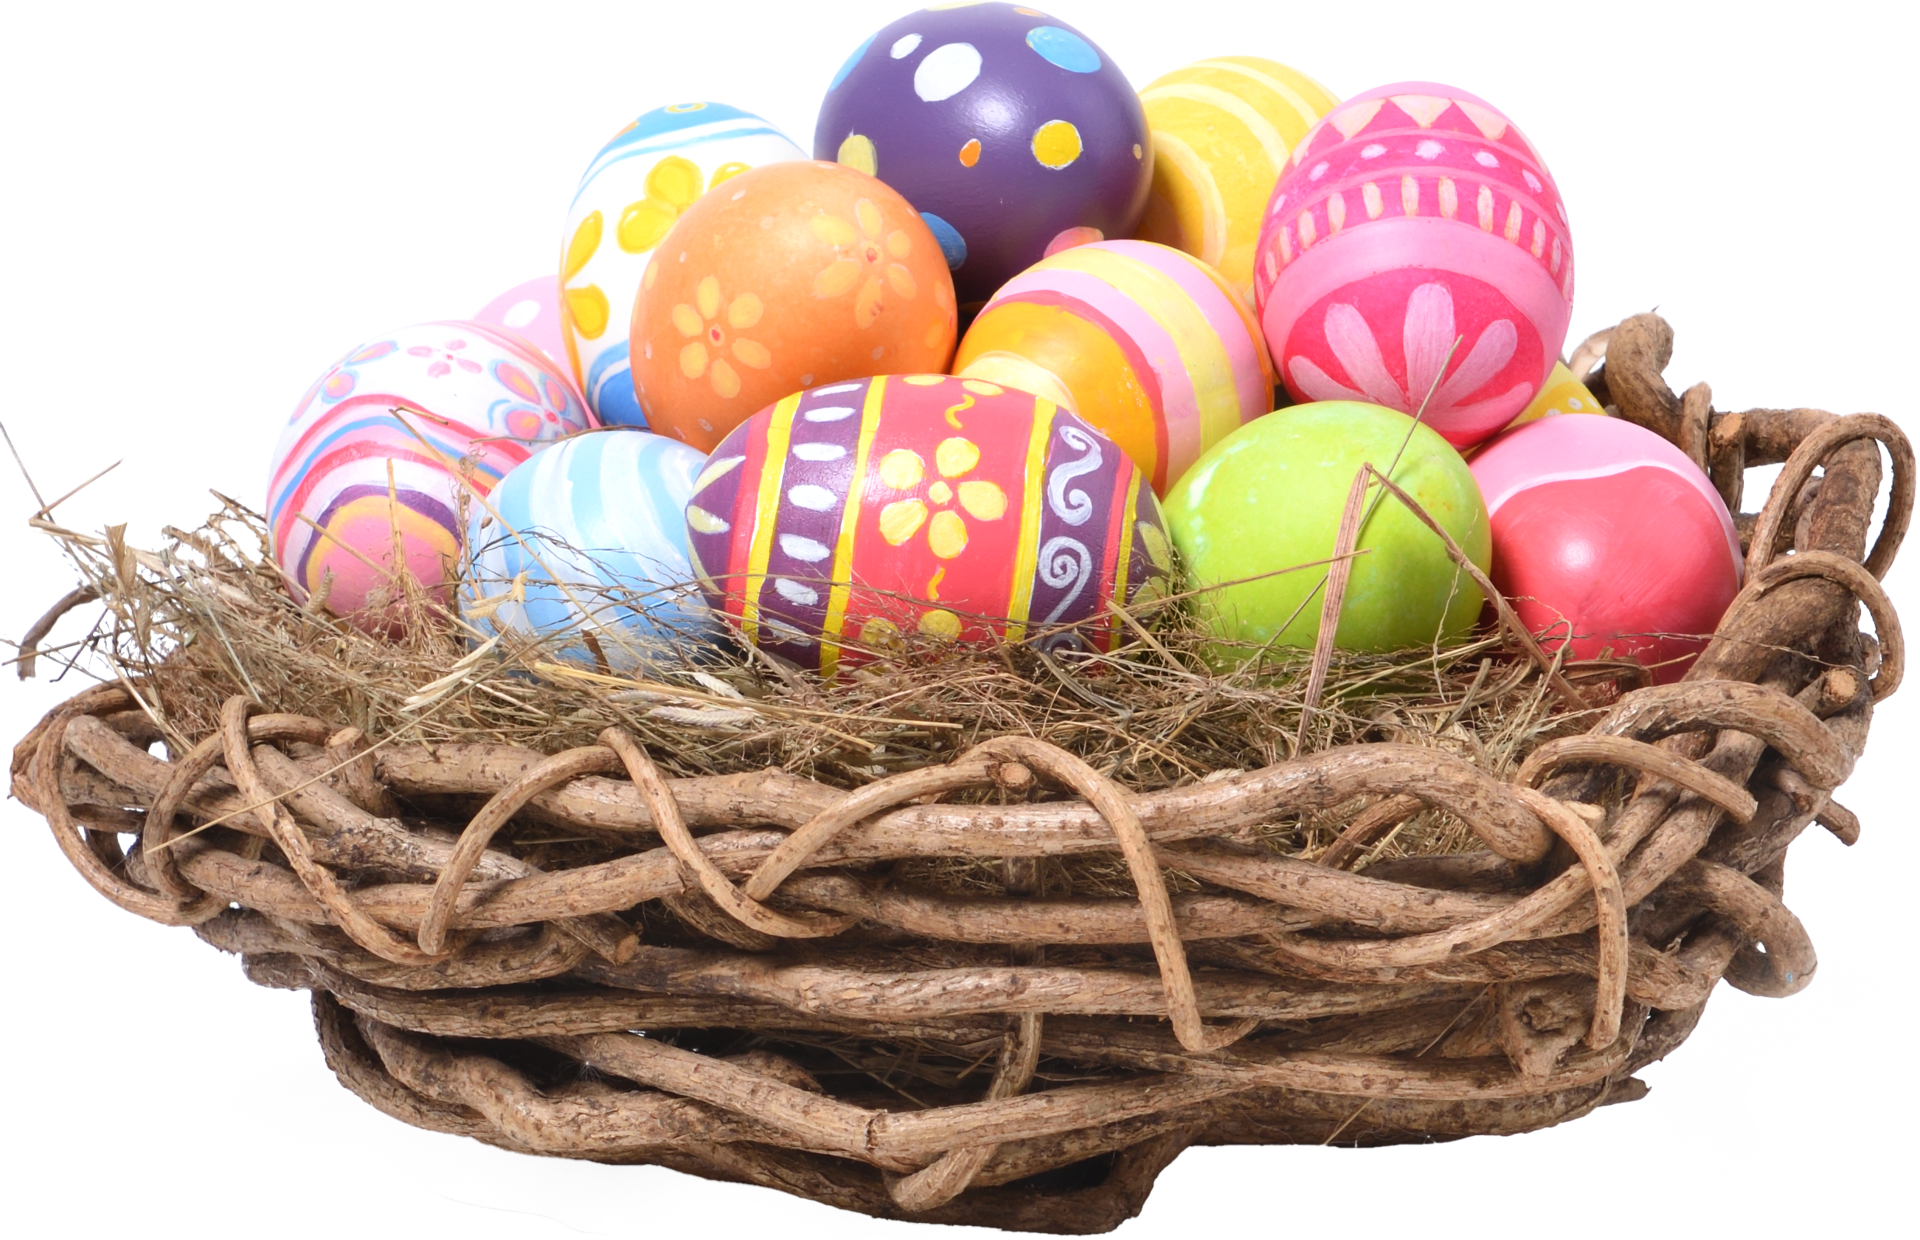 Mùa lễ Phục sinh chính là dịp để chúng ta tìm hiểu về ý nghĩa của những quả trứng tuyệt đẹp trong ngày lễ. Hãy cùng nhau đón xem những quả trứng được trang trí tinh tế với sắc màu tươi tắn, tạo nên không khí rực rỡ, thật đáng để dành thời gian trải nghiệm.